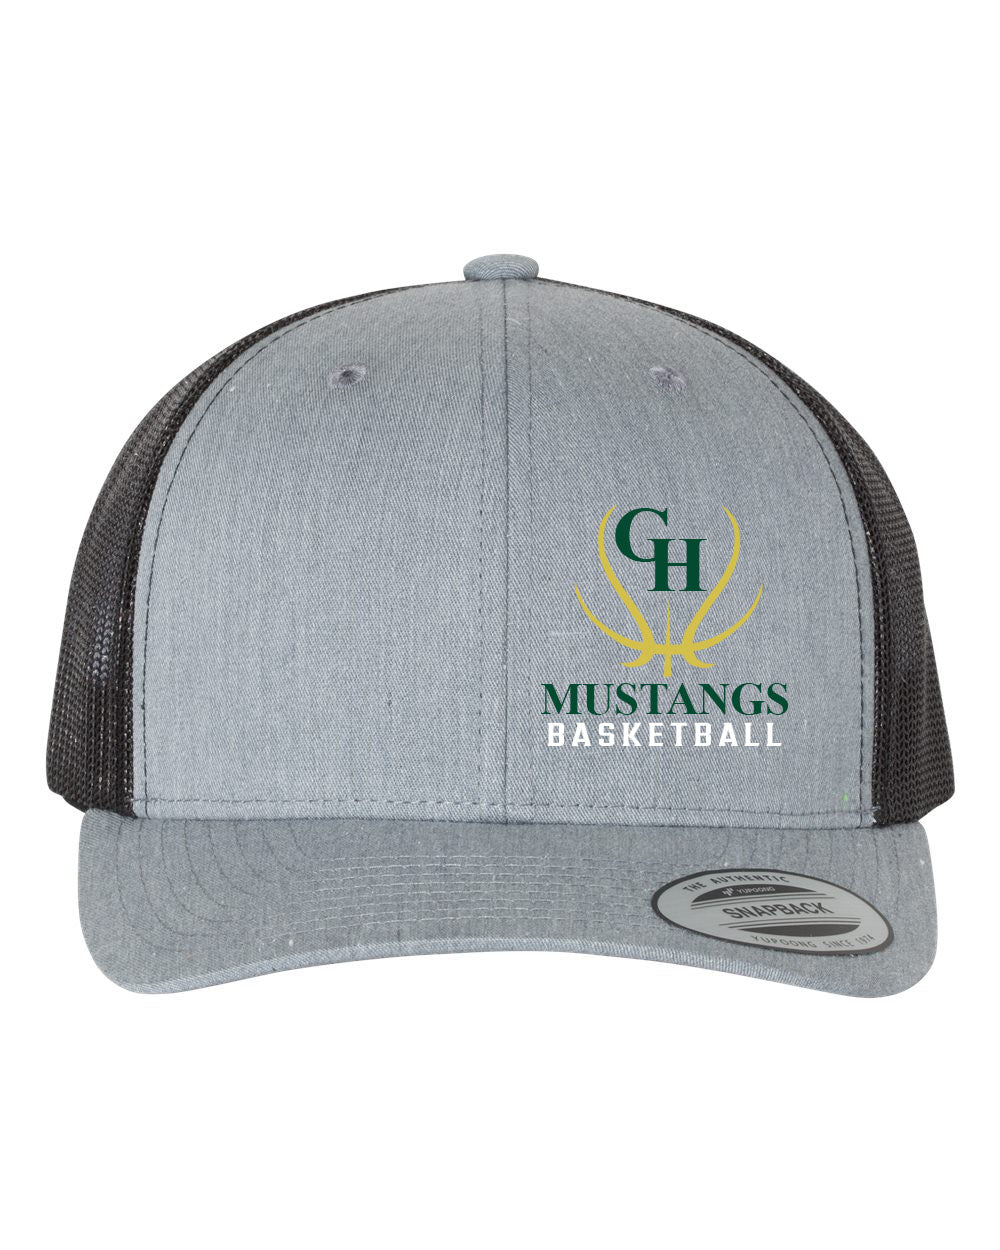 Green Hills Basketball Design 7 Trucker Hat